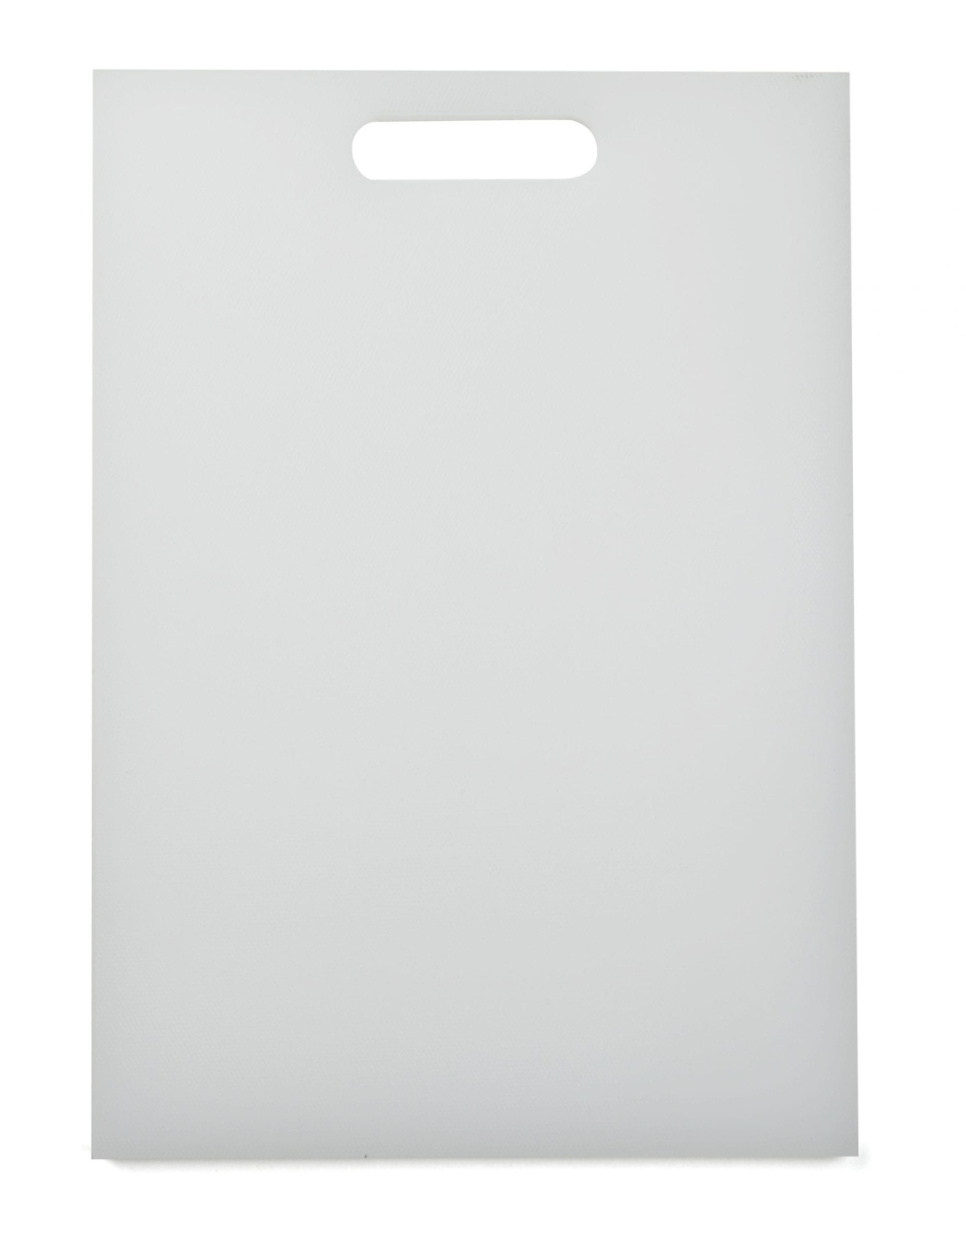 Leikkuulauta valkoinen, 35 x 26 cm - Exxent ryhmässä Ruoanlaitto / Keittiövälineet / Leikkuulaudat @ KitchenLab (1071-10194)